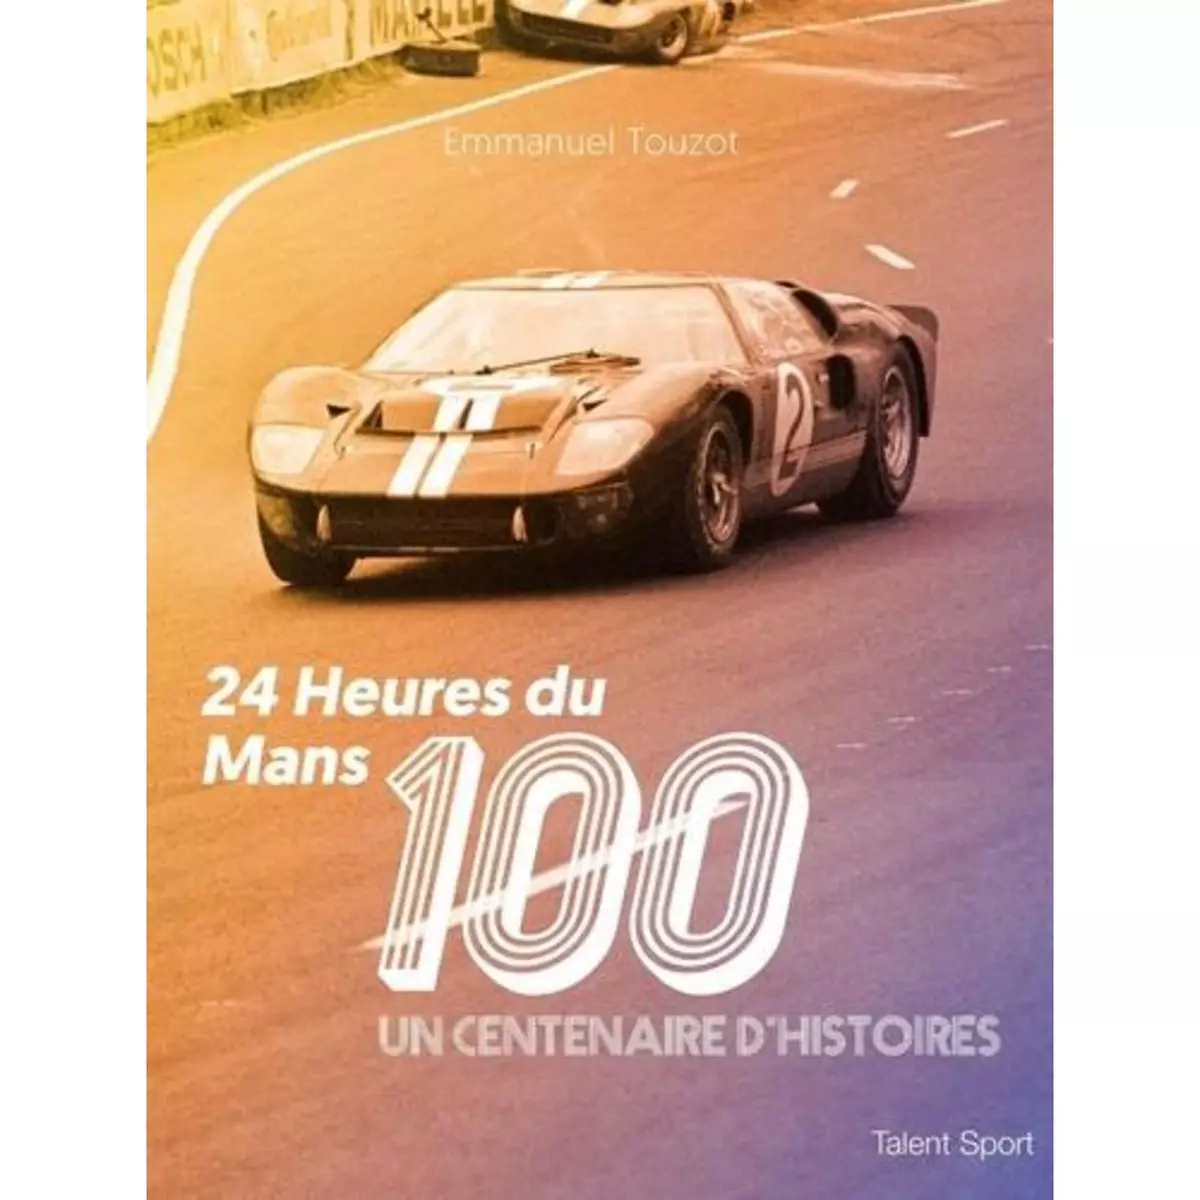  24 HEURES DU MANS 100. UN CENTENAIRE D'HISTOIRES, Touzot Emmanuel